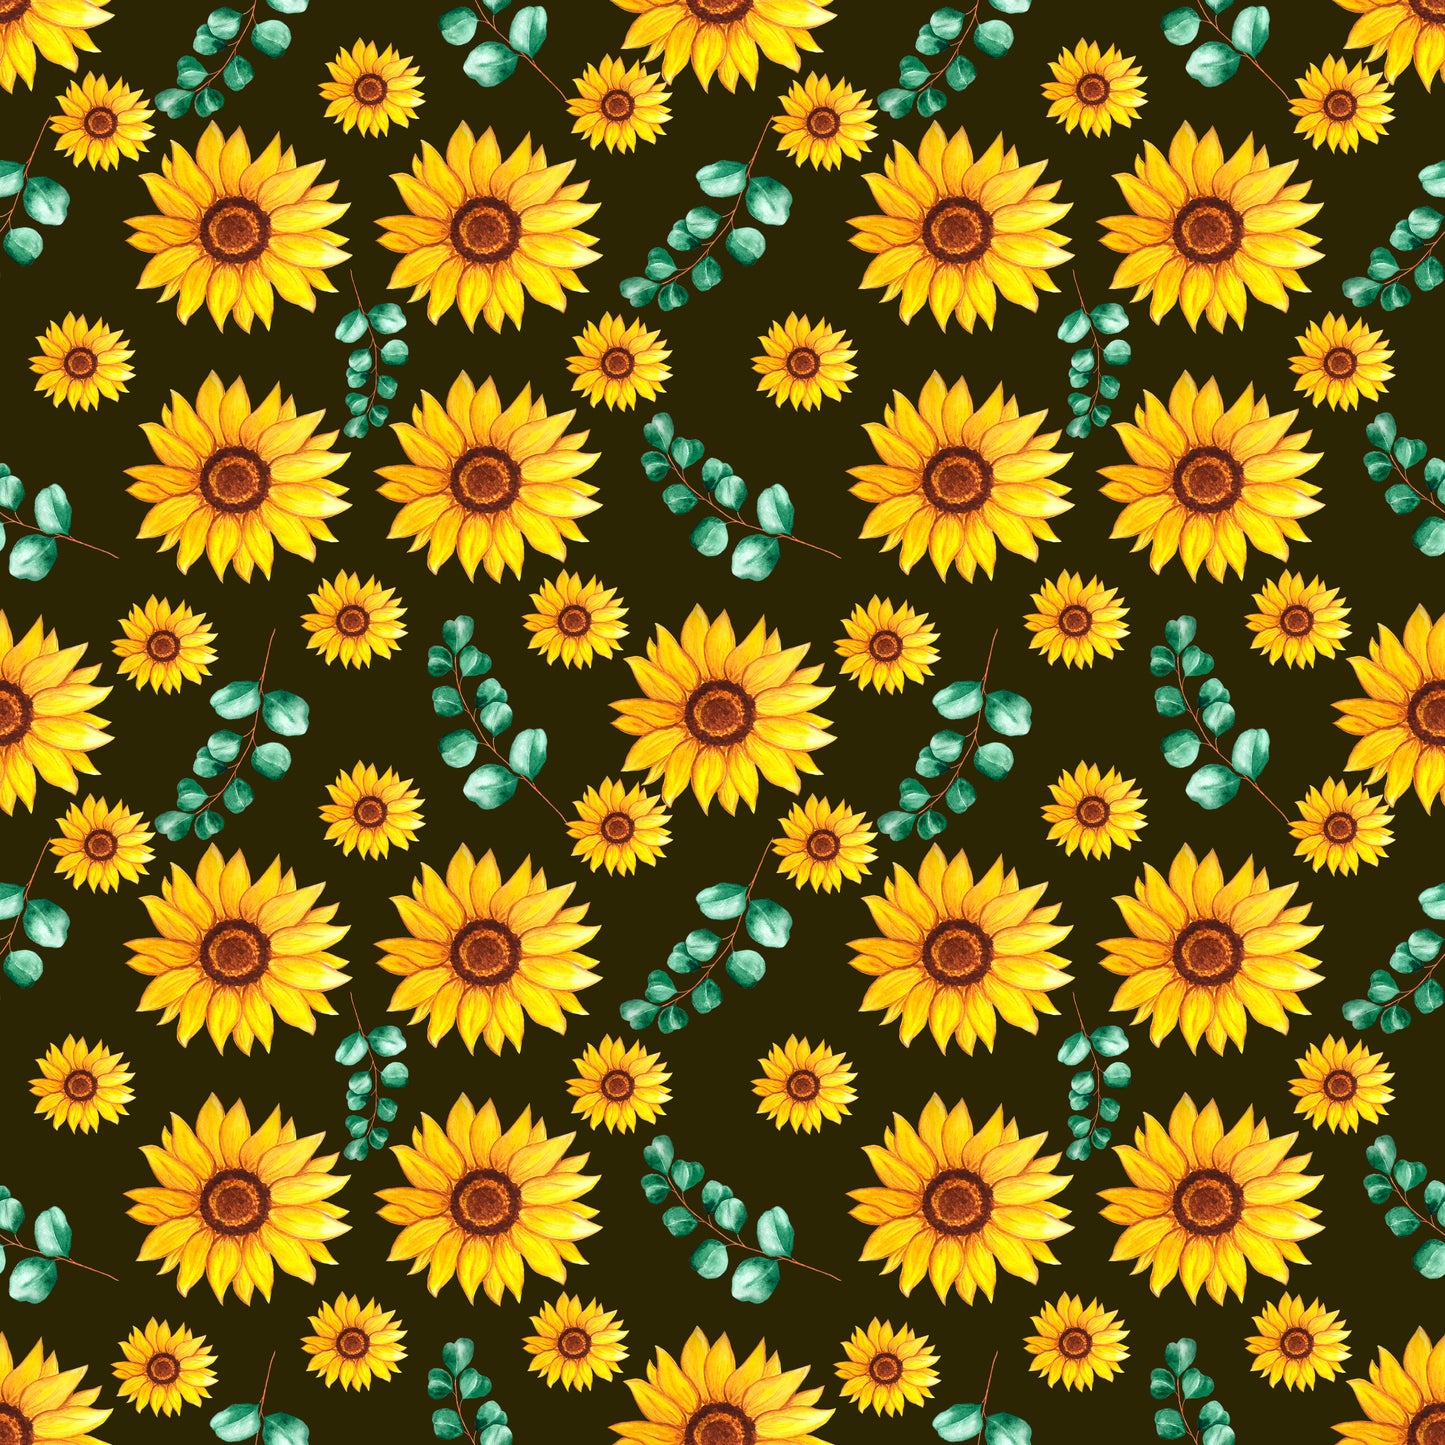 Sunflower - 011 Vinyl Sheet